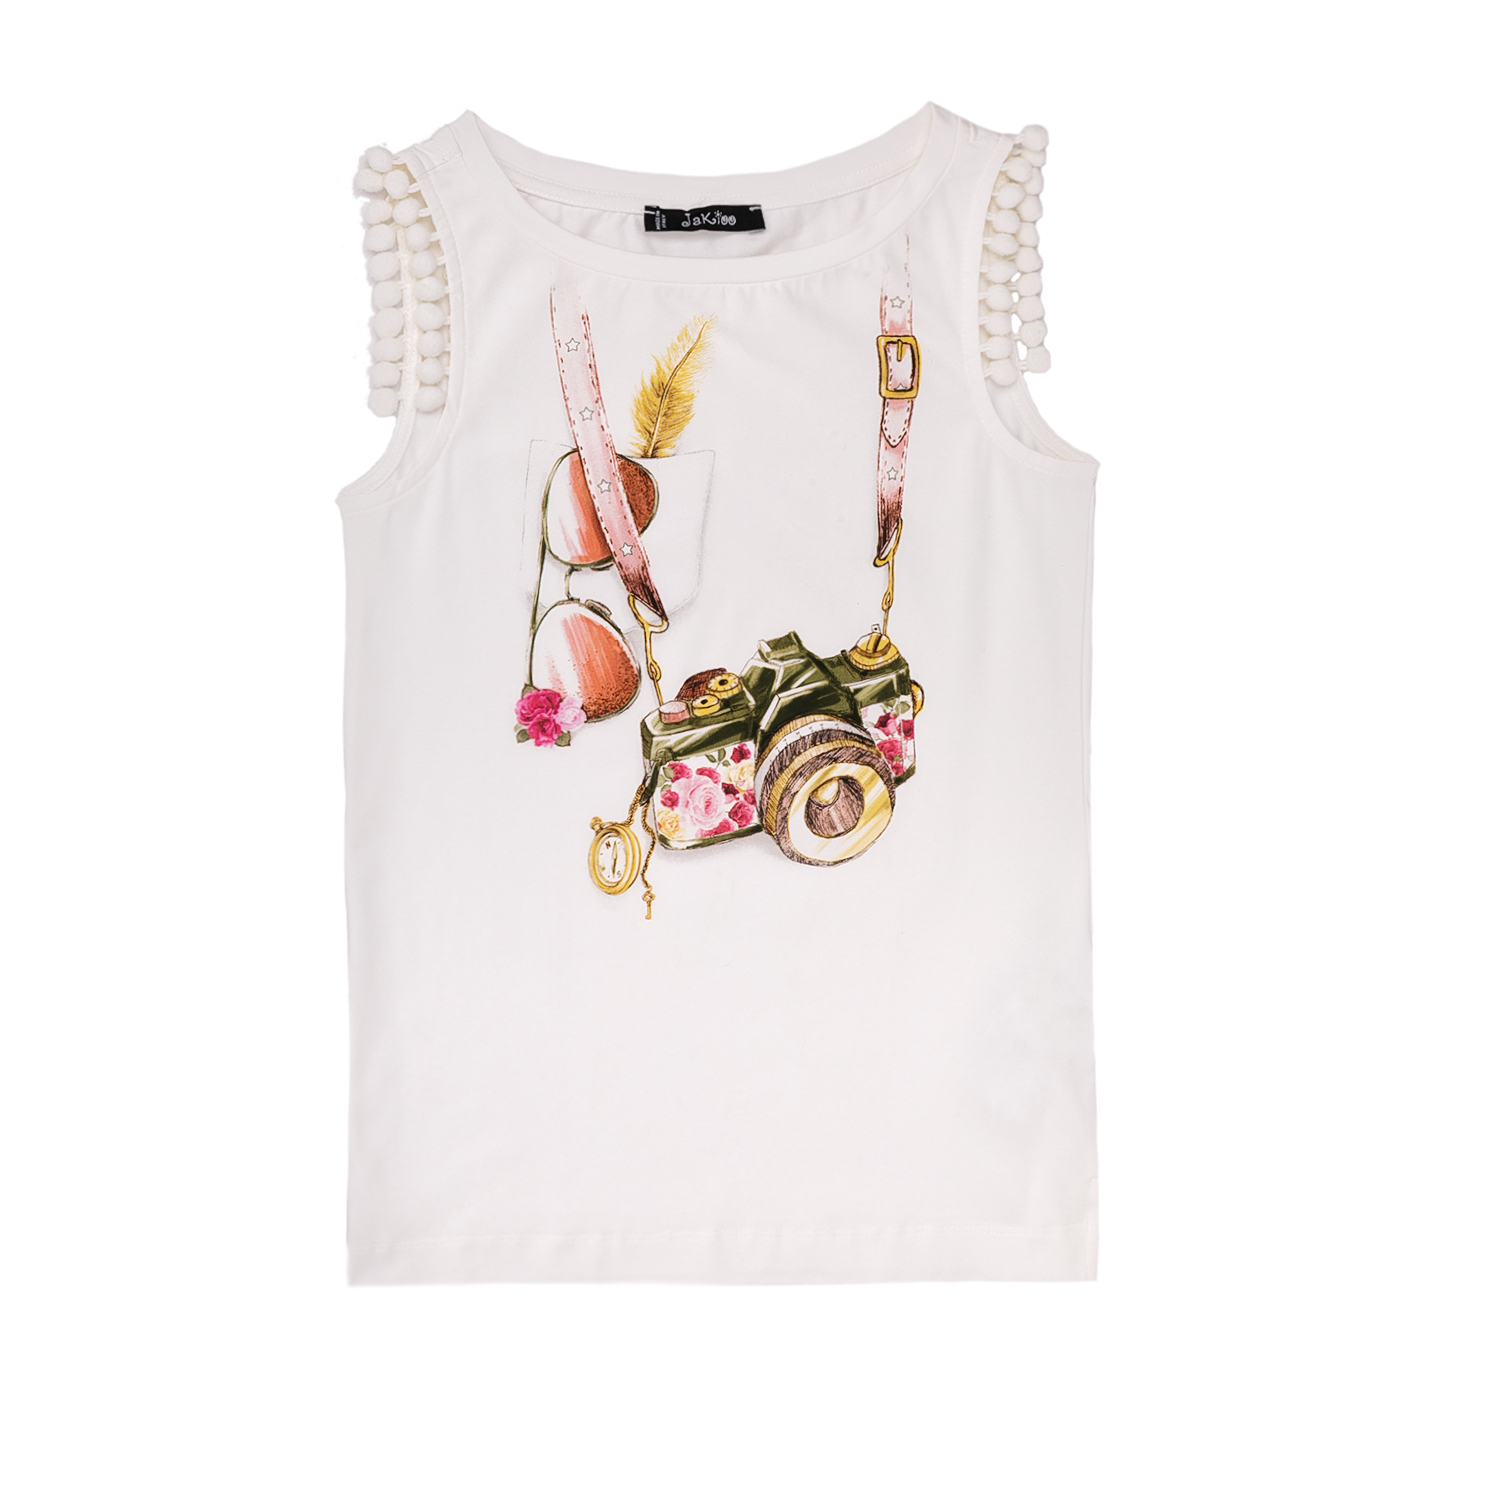 Παιδικά/Girls/Ρούχα/Μπλούζες Κοντομάνικες-Αμάνικες JAKIOO - Παιδικό αμάνικο μπλουζάκι Jakioo λευκό με στάμπα